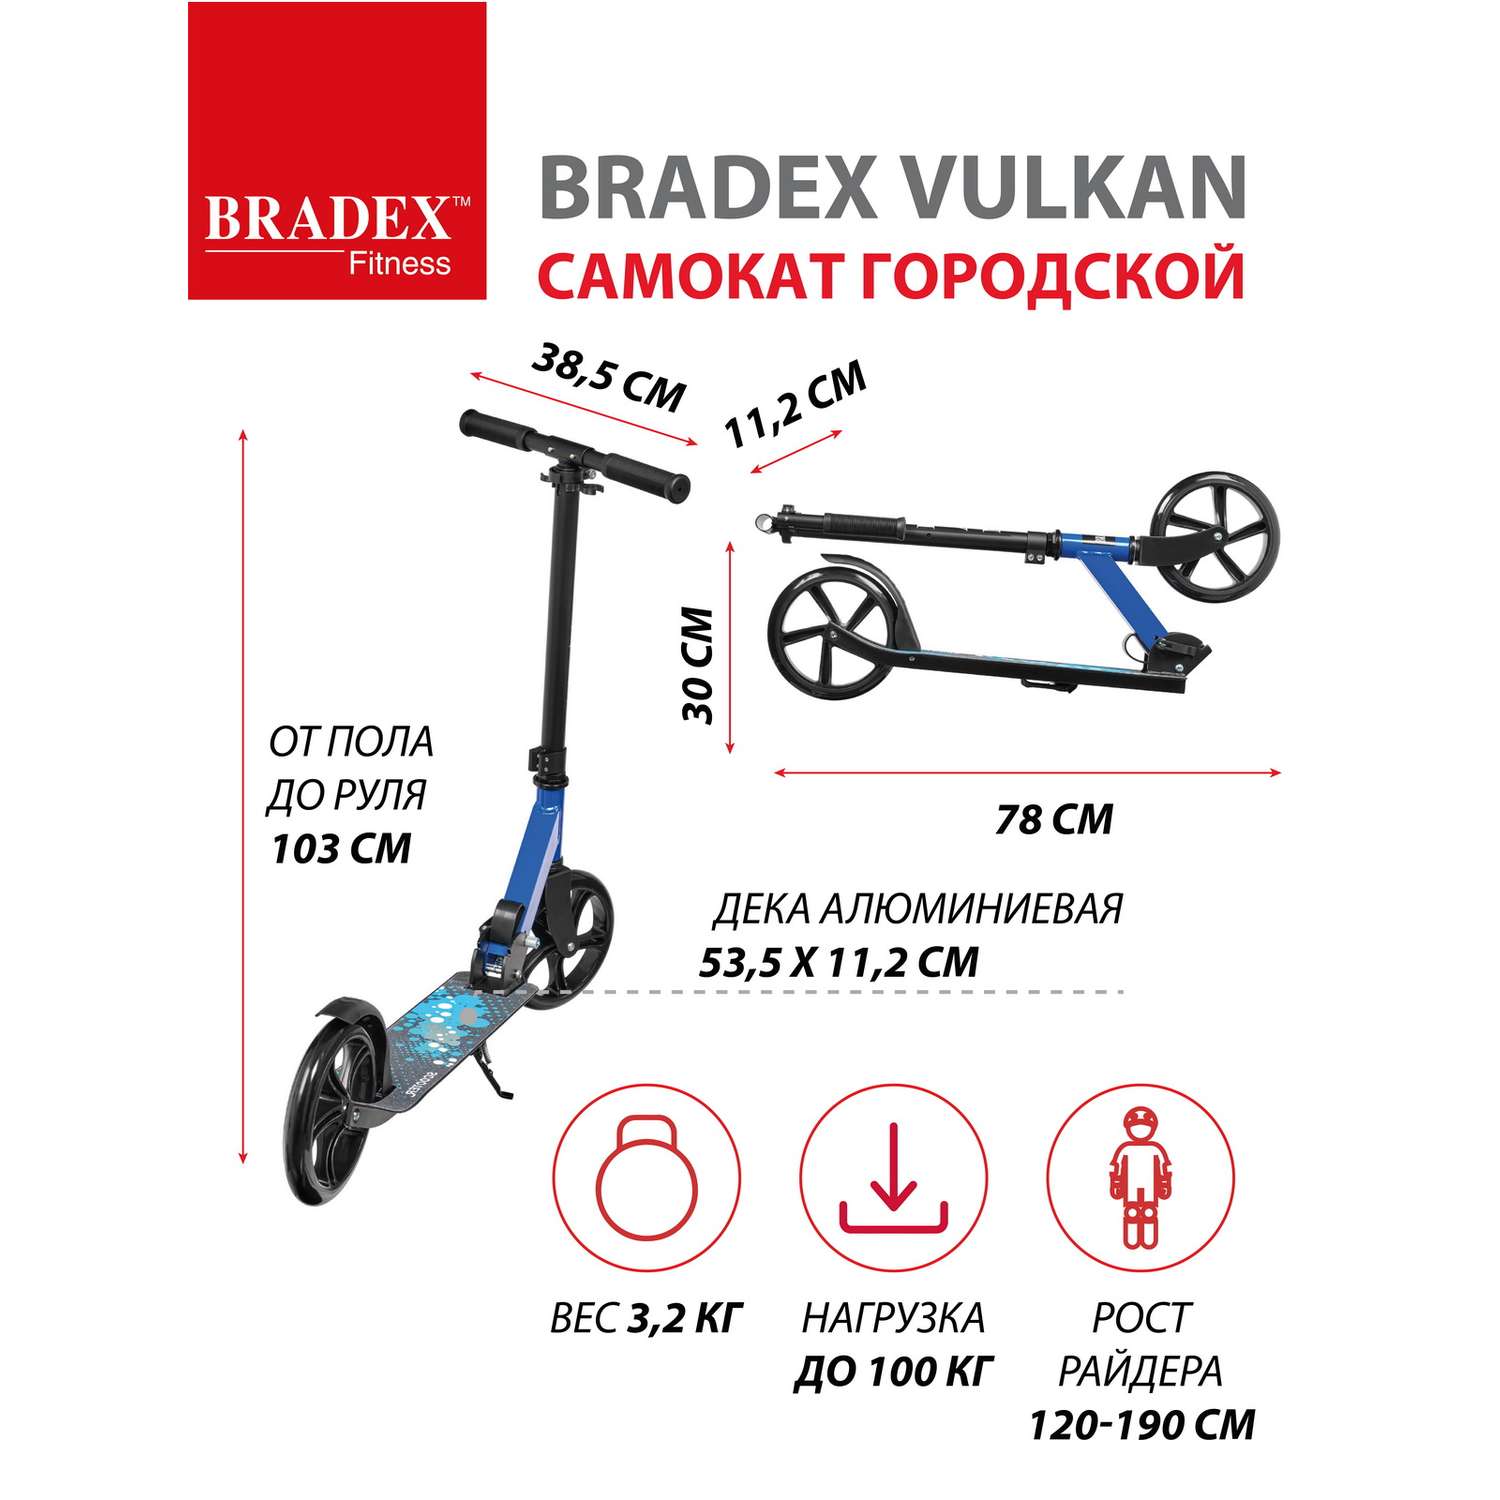 Самокат Bradex городской колеса 200 мм VULKAN - фото 3